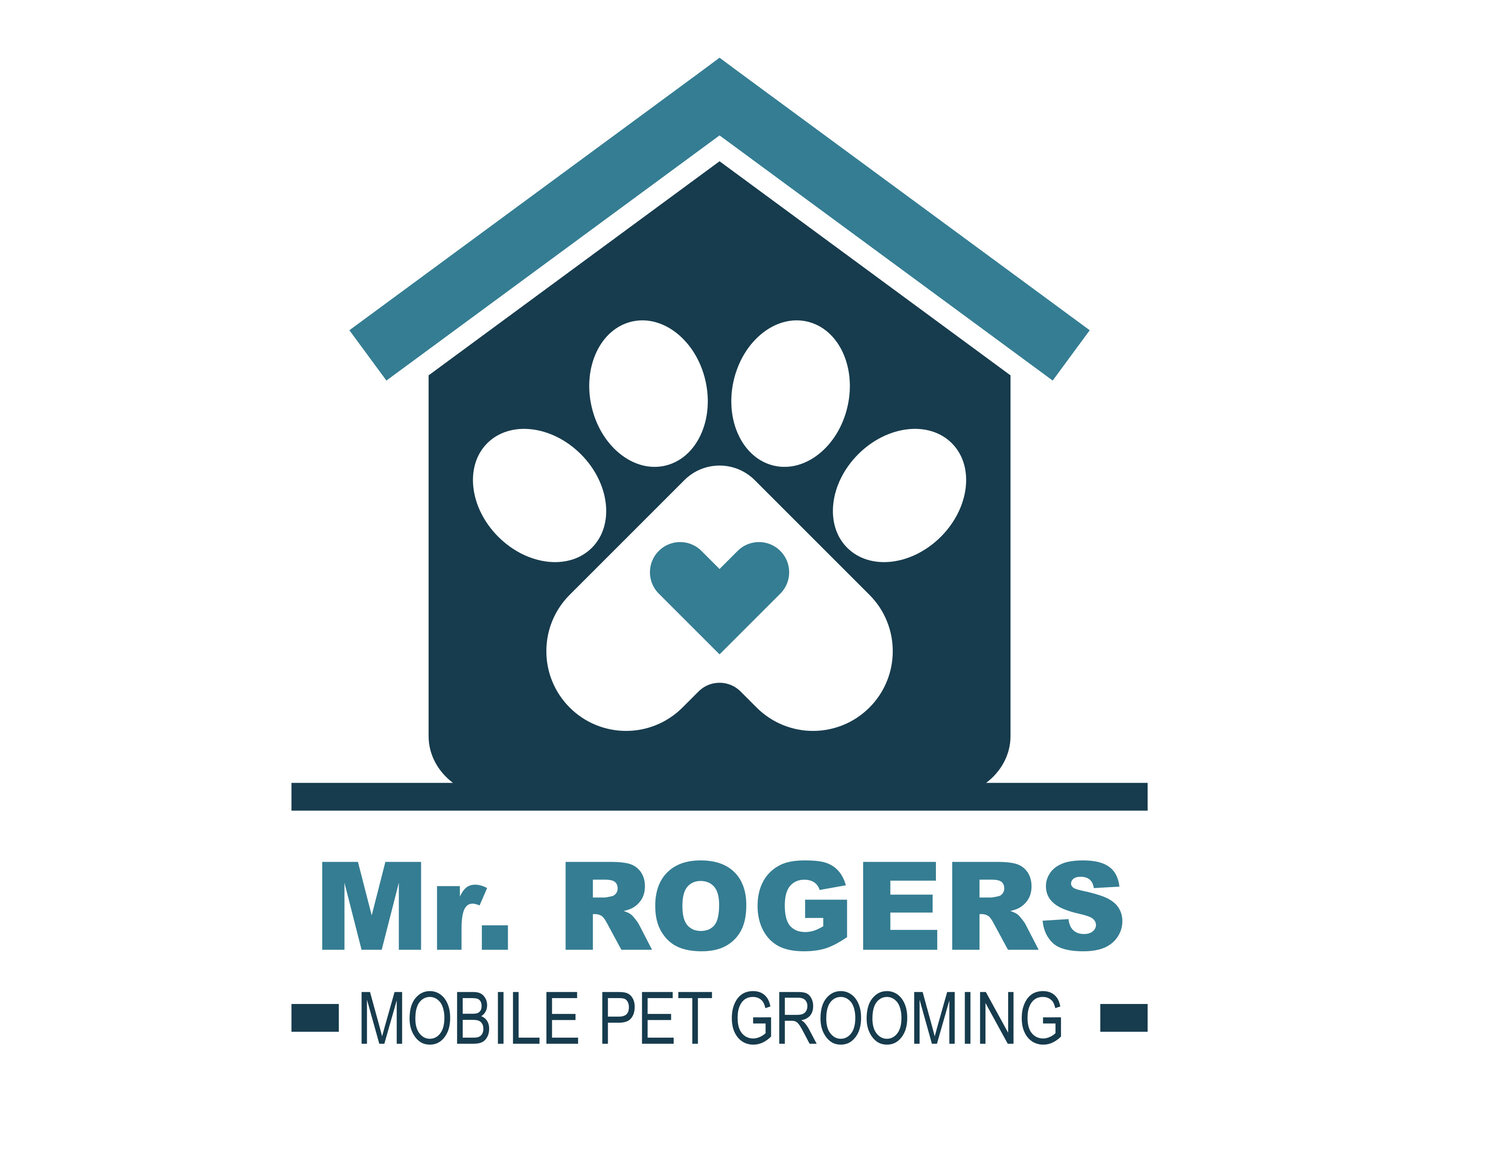 Mr. Rogers Mobile Pet Grooming